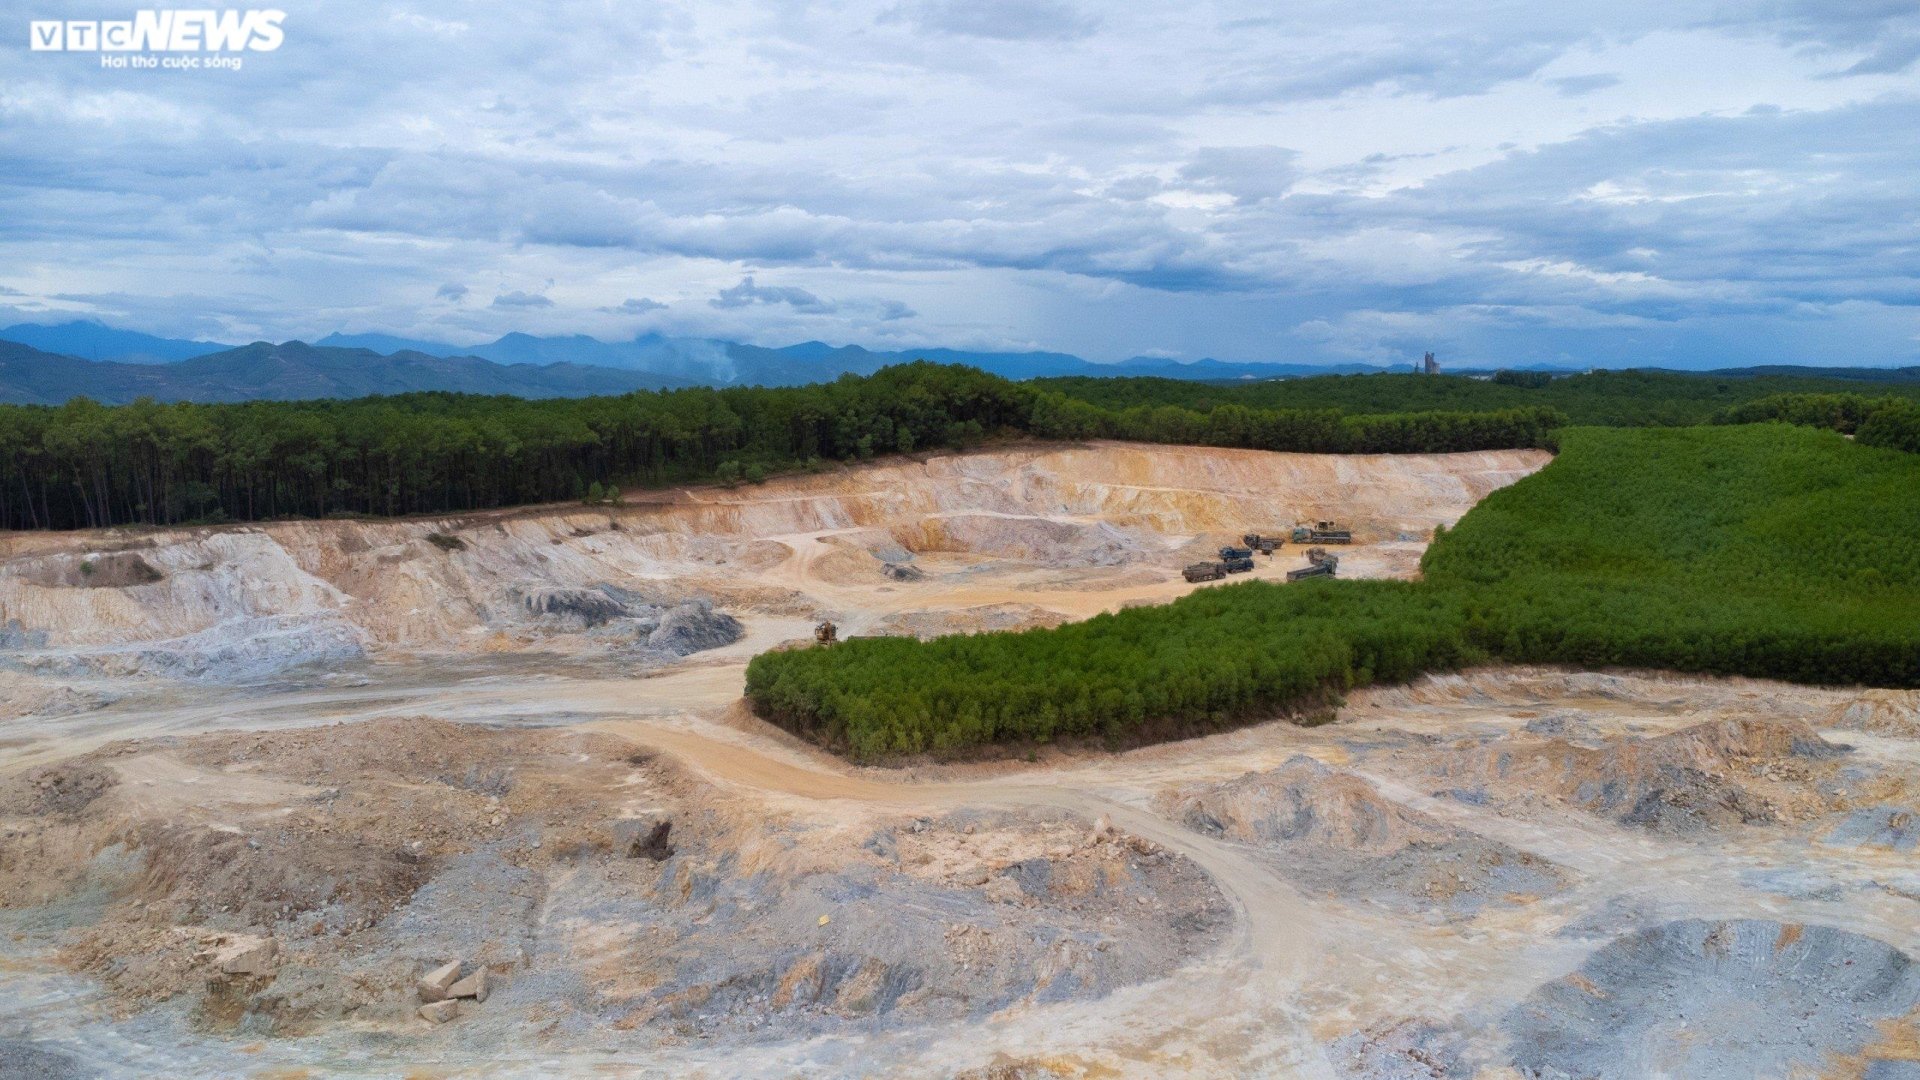 Thâm nhập đại công trường khai thác khoáng sản sai phép ở Thừa Thiên - Huế - Ảnh 11.